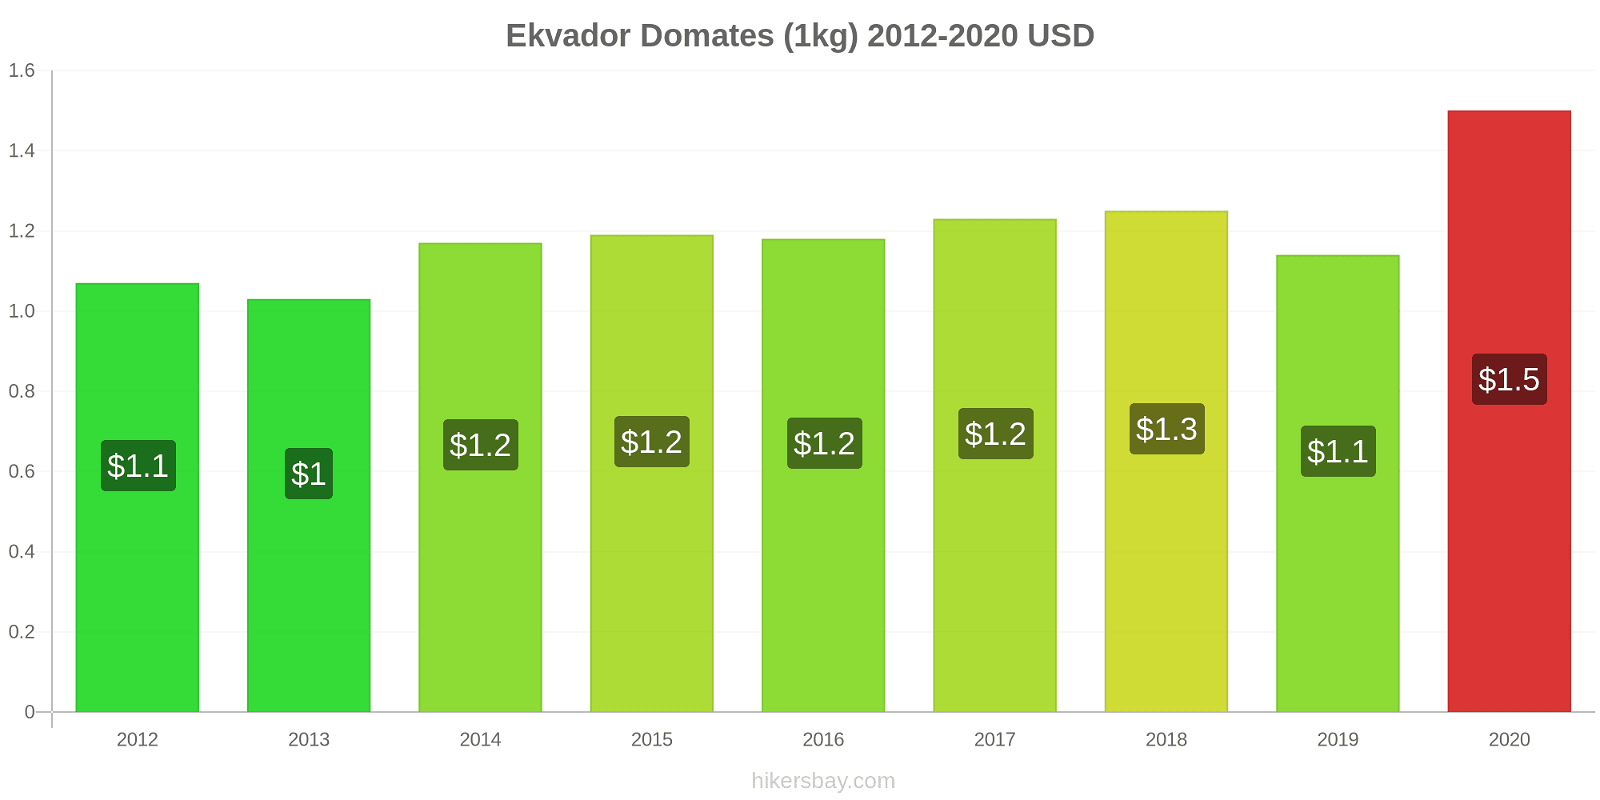 Ekvador fiyat değişiklikleri Domates (1kg) hikersbay.com